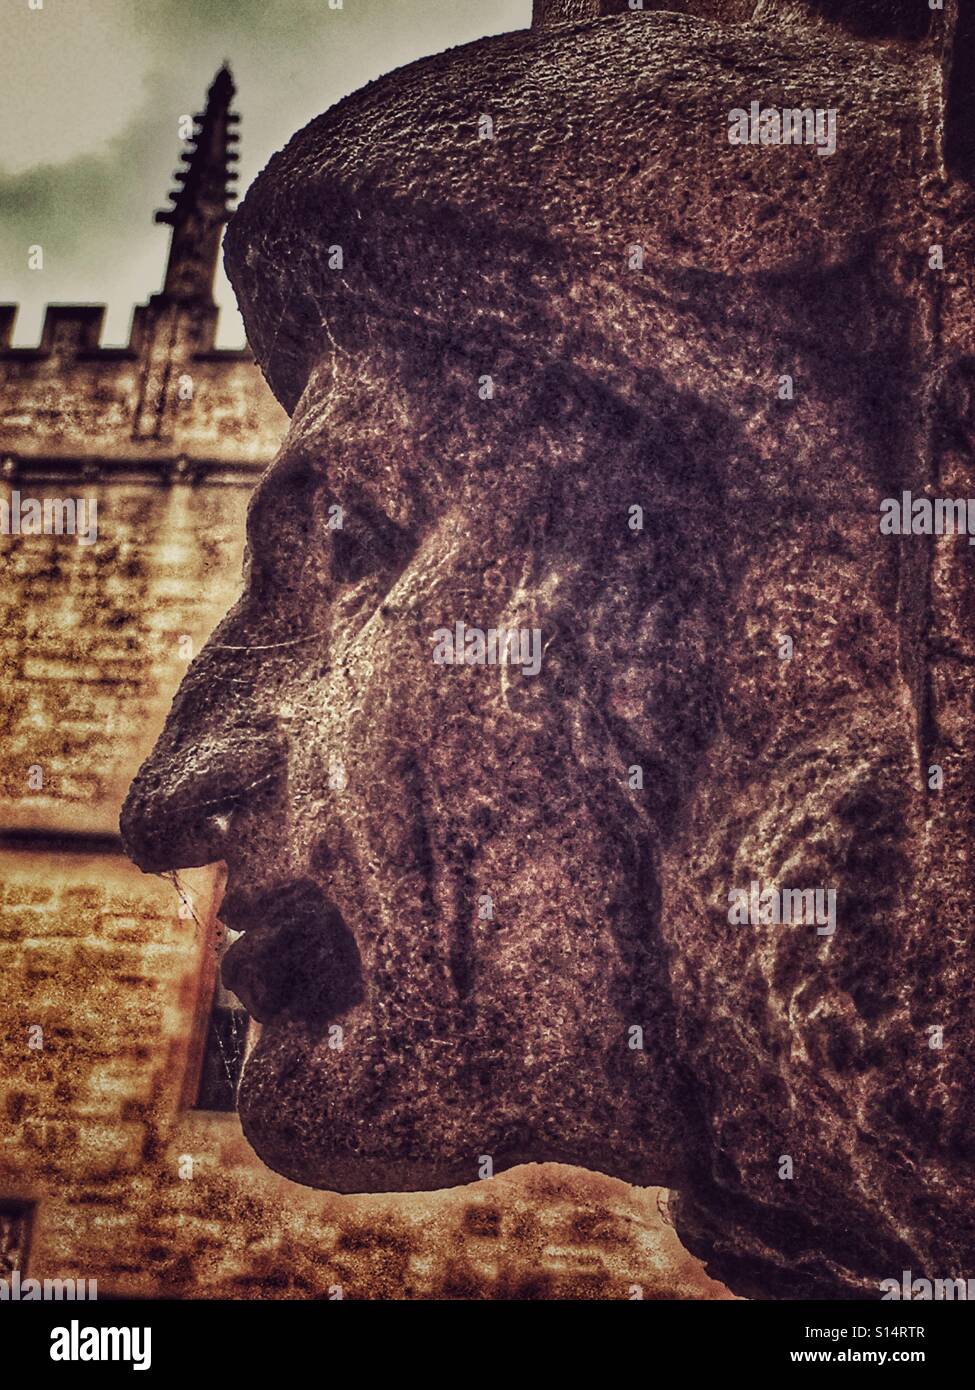 Un grotesque. Tête en pierre sculptée de la décoration d'une porte dans les principaux quad de la Bodleian Library, Oxford University, en Angleterre. Banque D'Images